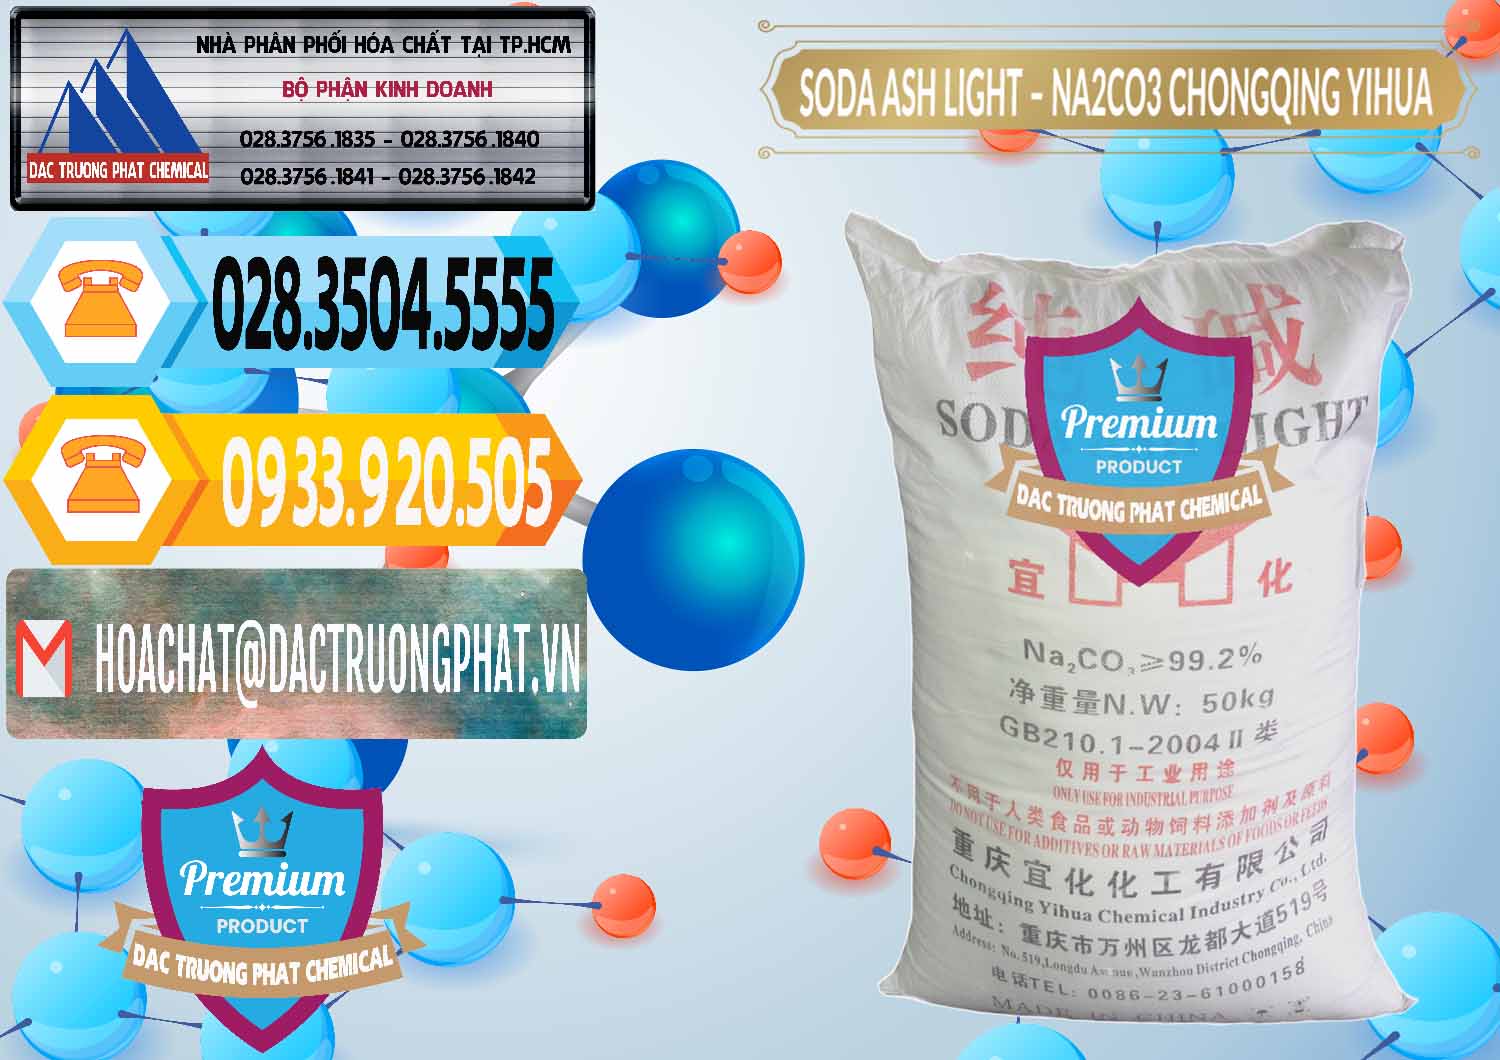 Nơi chuyên bán _ cung cấp Soda Ash Light - NA2CO3 Chongqing Yihua Trung Quốc China - 0129 - Cty bán và phân phối hóa chất tại TP.HCM - hoachattayrua.net